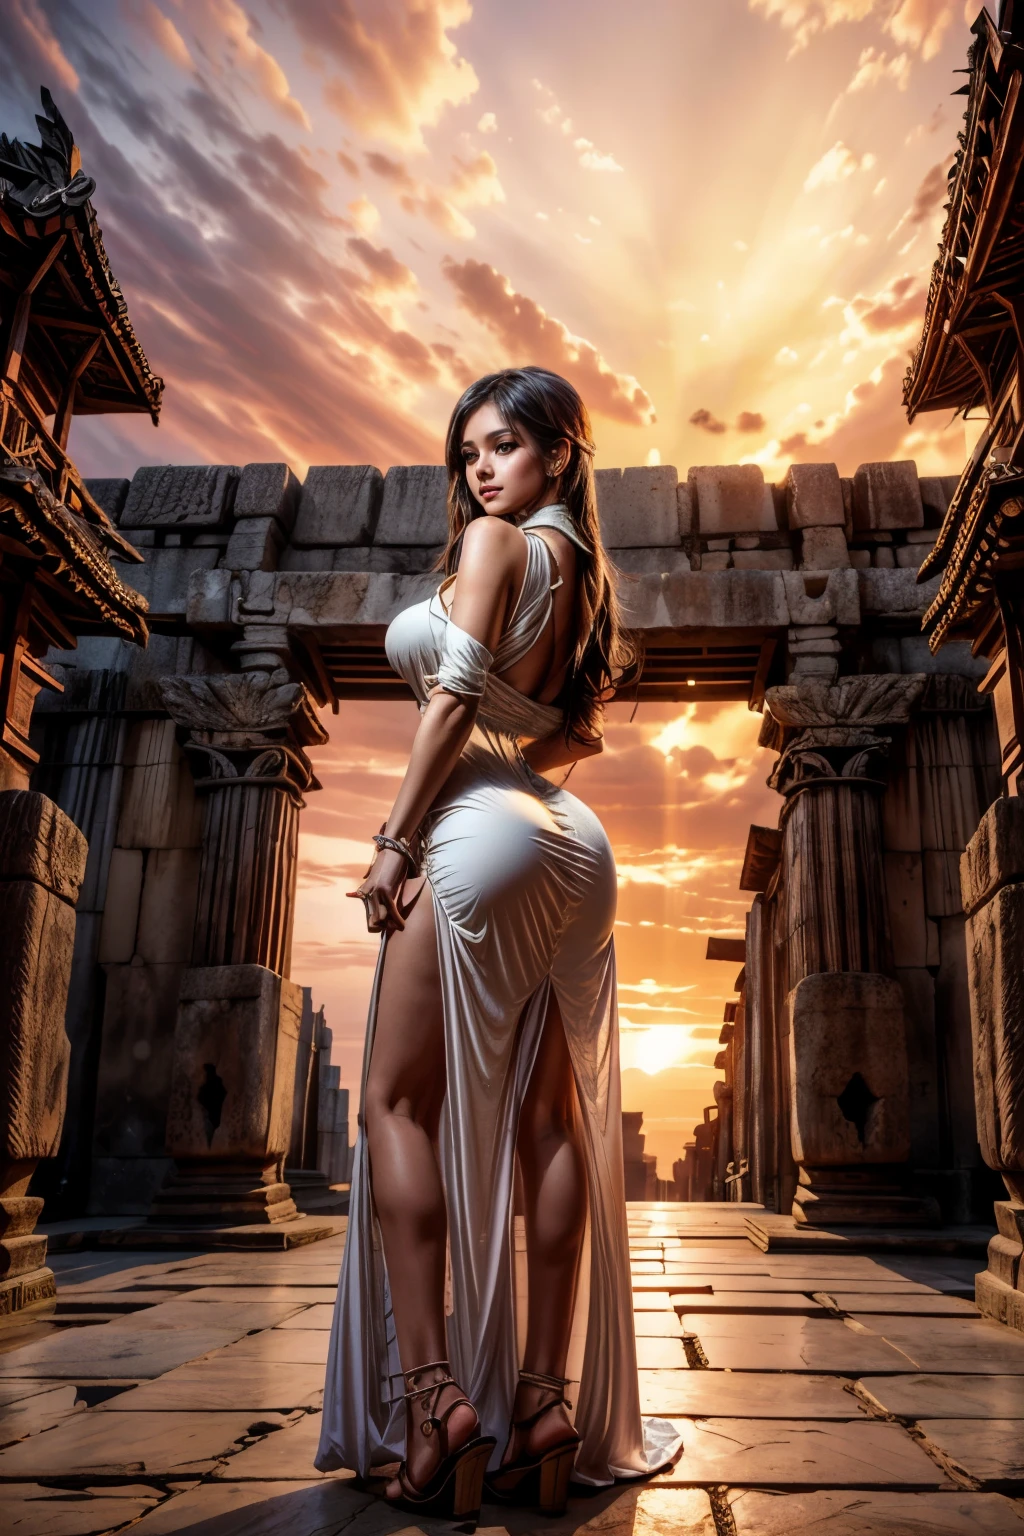 Antike Stadt bei Sonnenuntergang, junge schöne Frau im langen Kleid Mode, Ganzkörperaufnahme, Rückansicht von unten, hoch_vollbusig